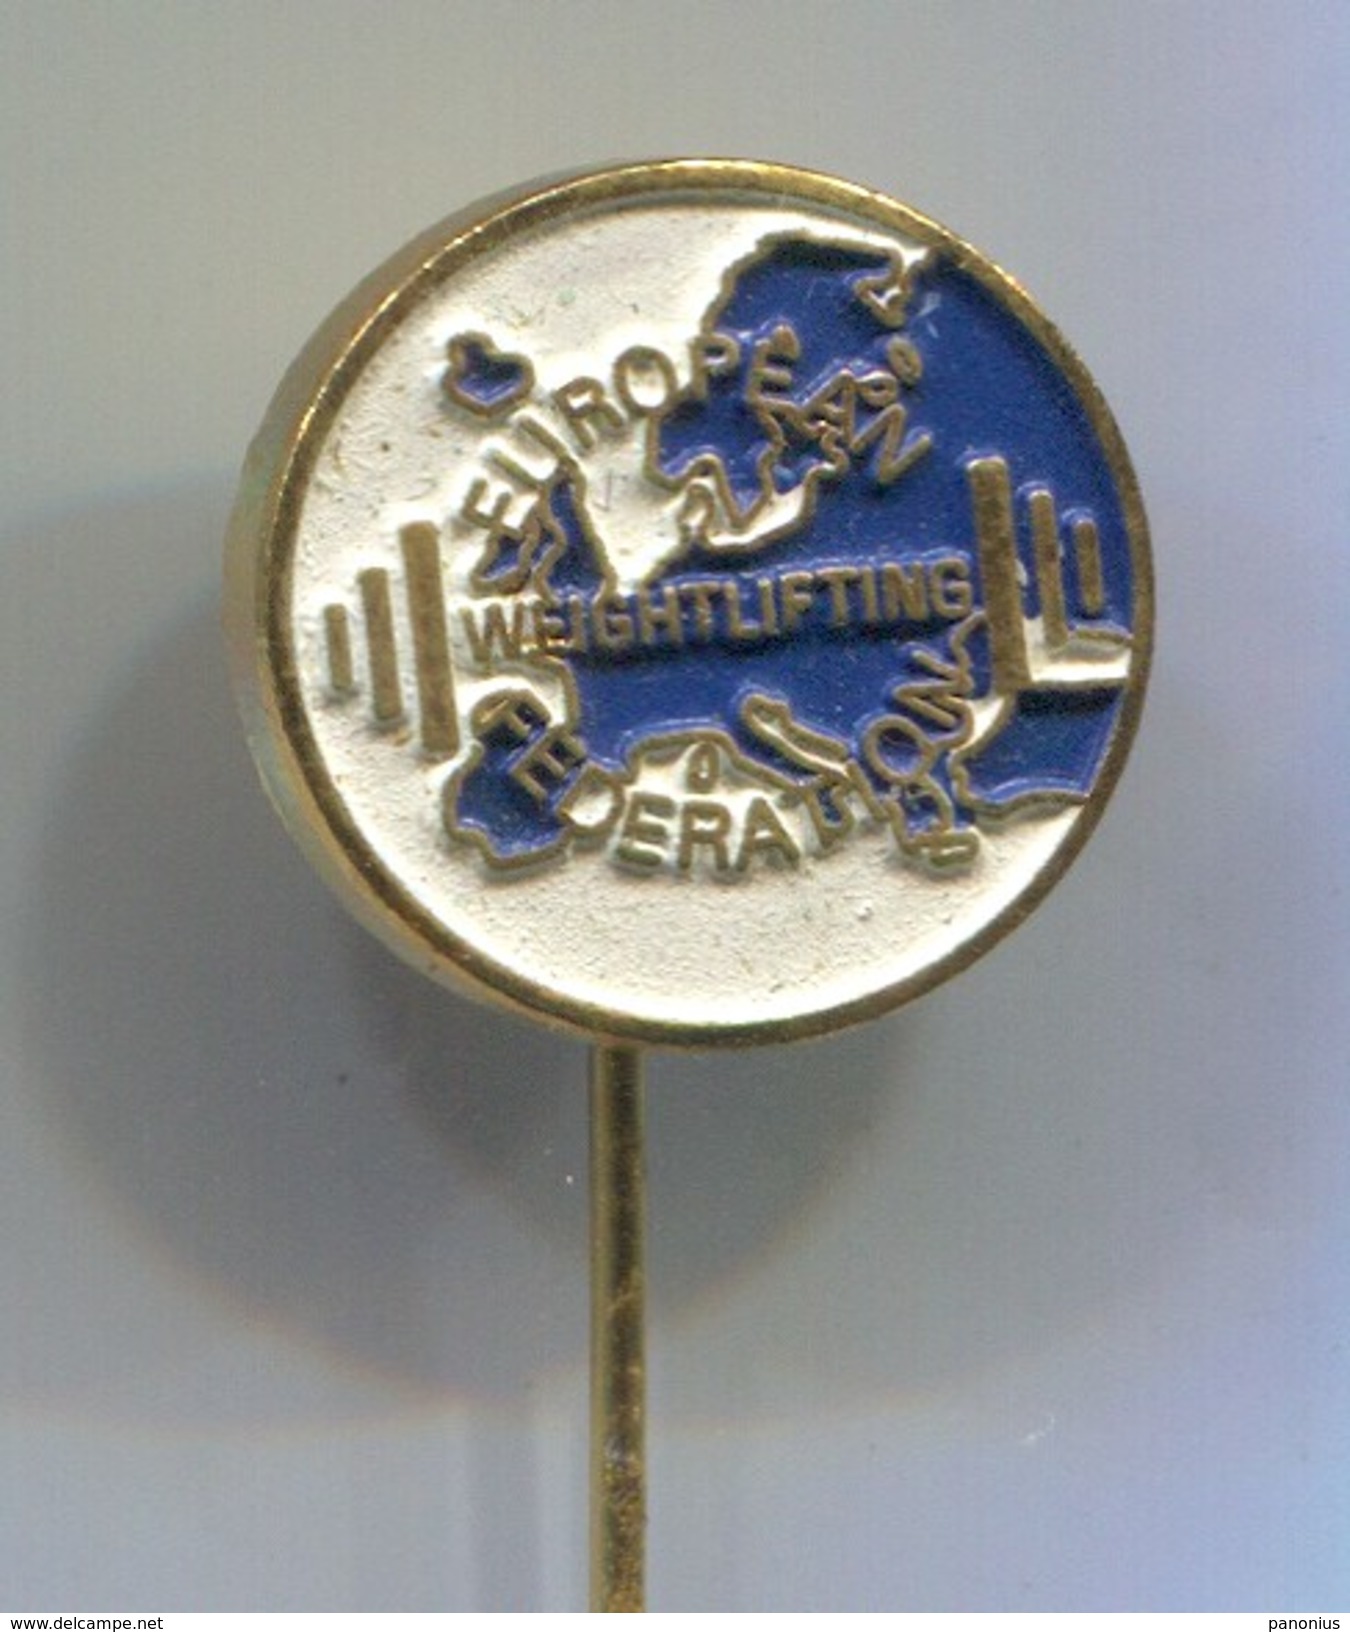 Weightlifting - EUROPEAN FEDERATION, Vintage Pin Badge, Abzeichen - Gewichtheffen